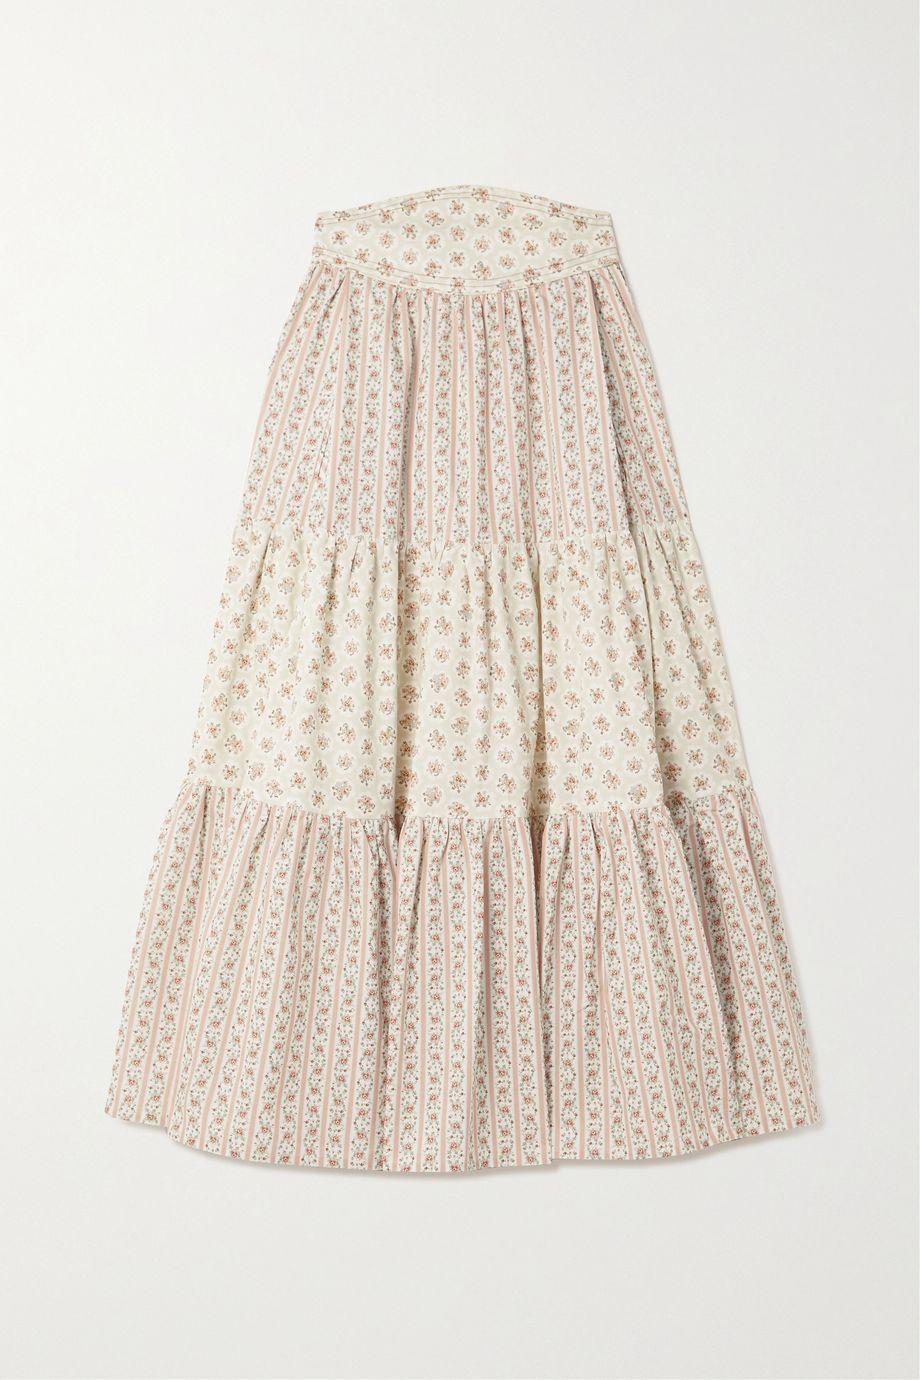 Tati tiered floral-print cotton-poplin midi skirt by ANNA MASON